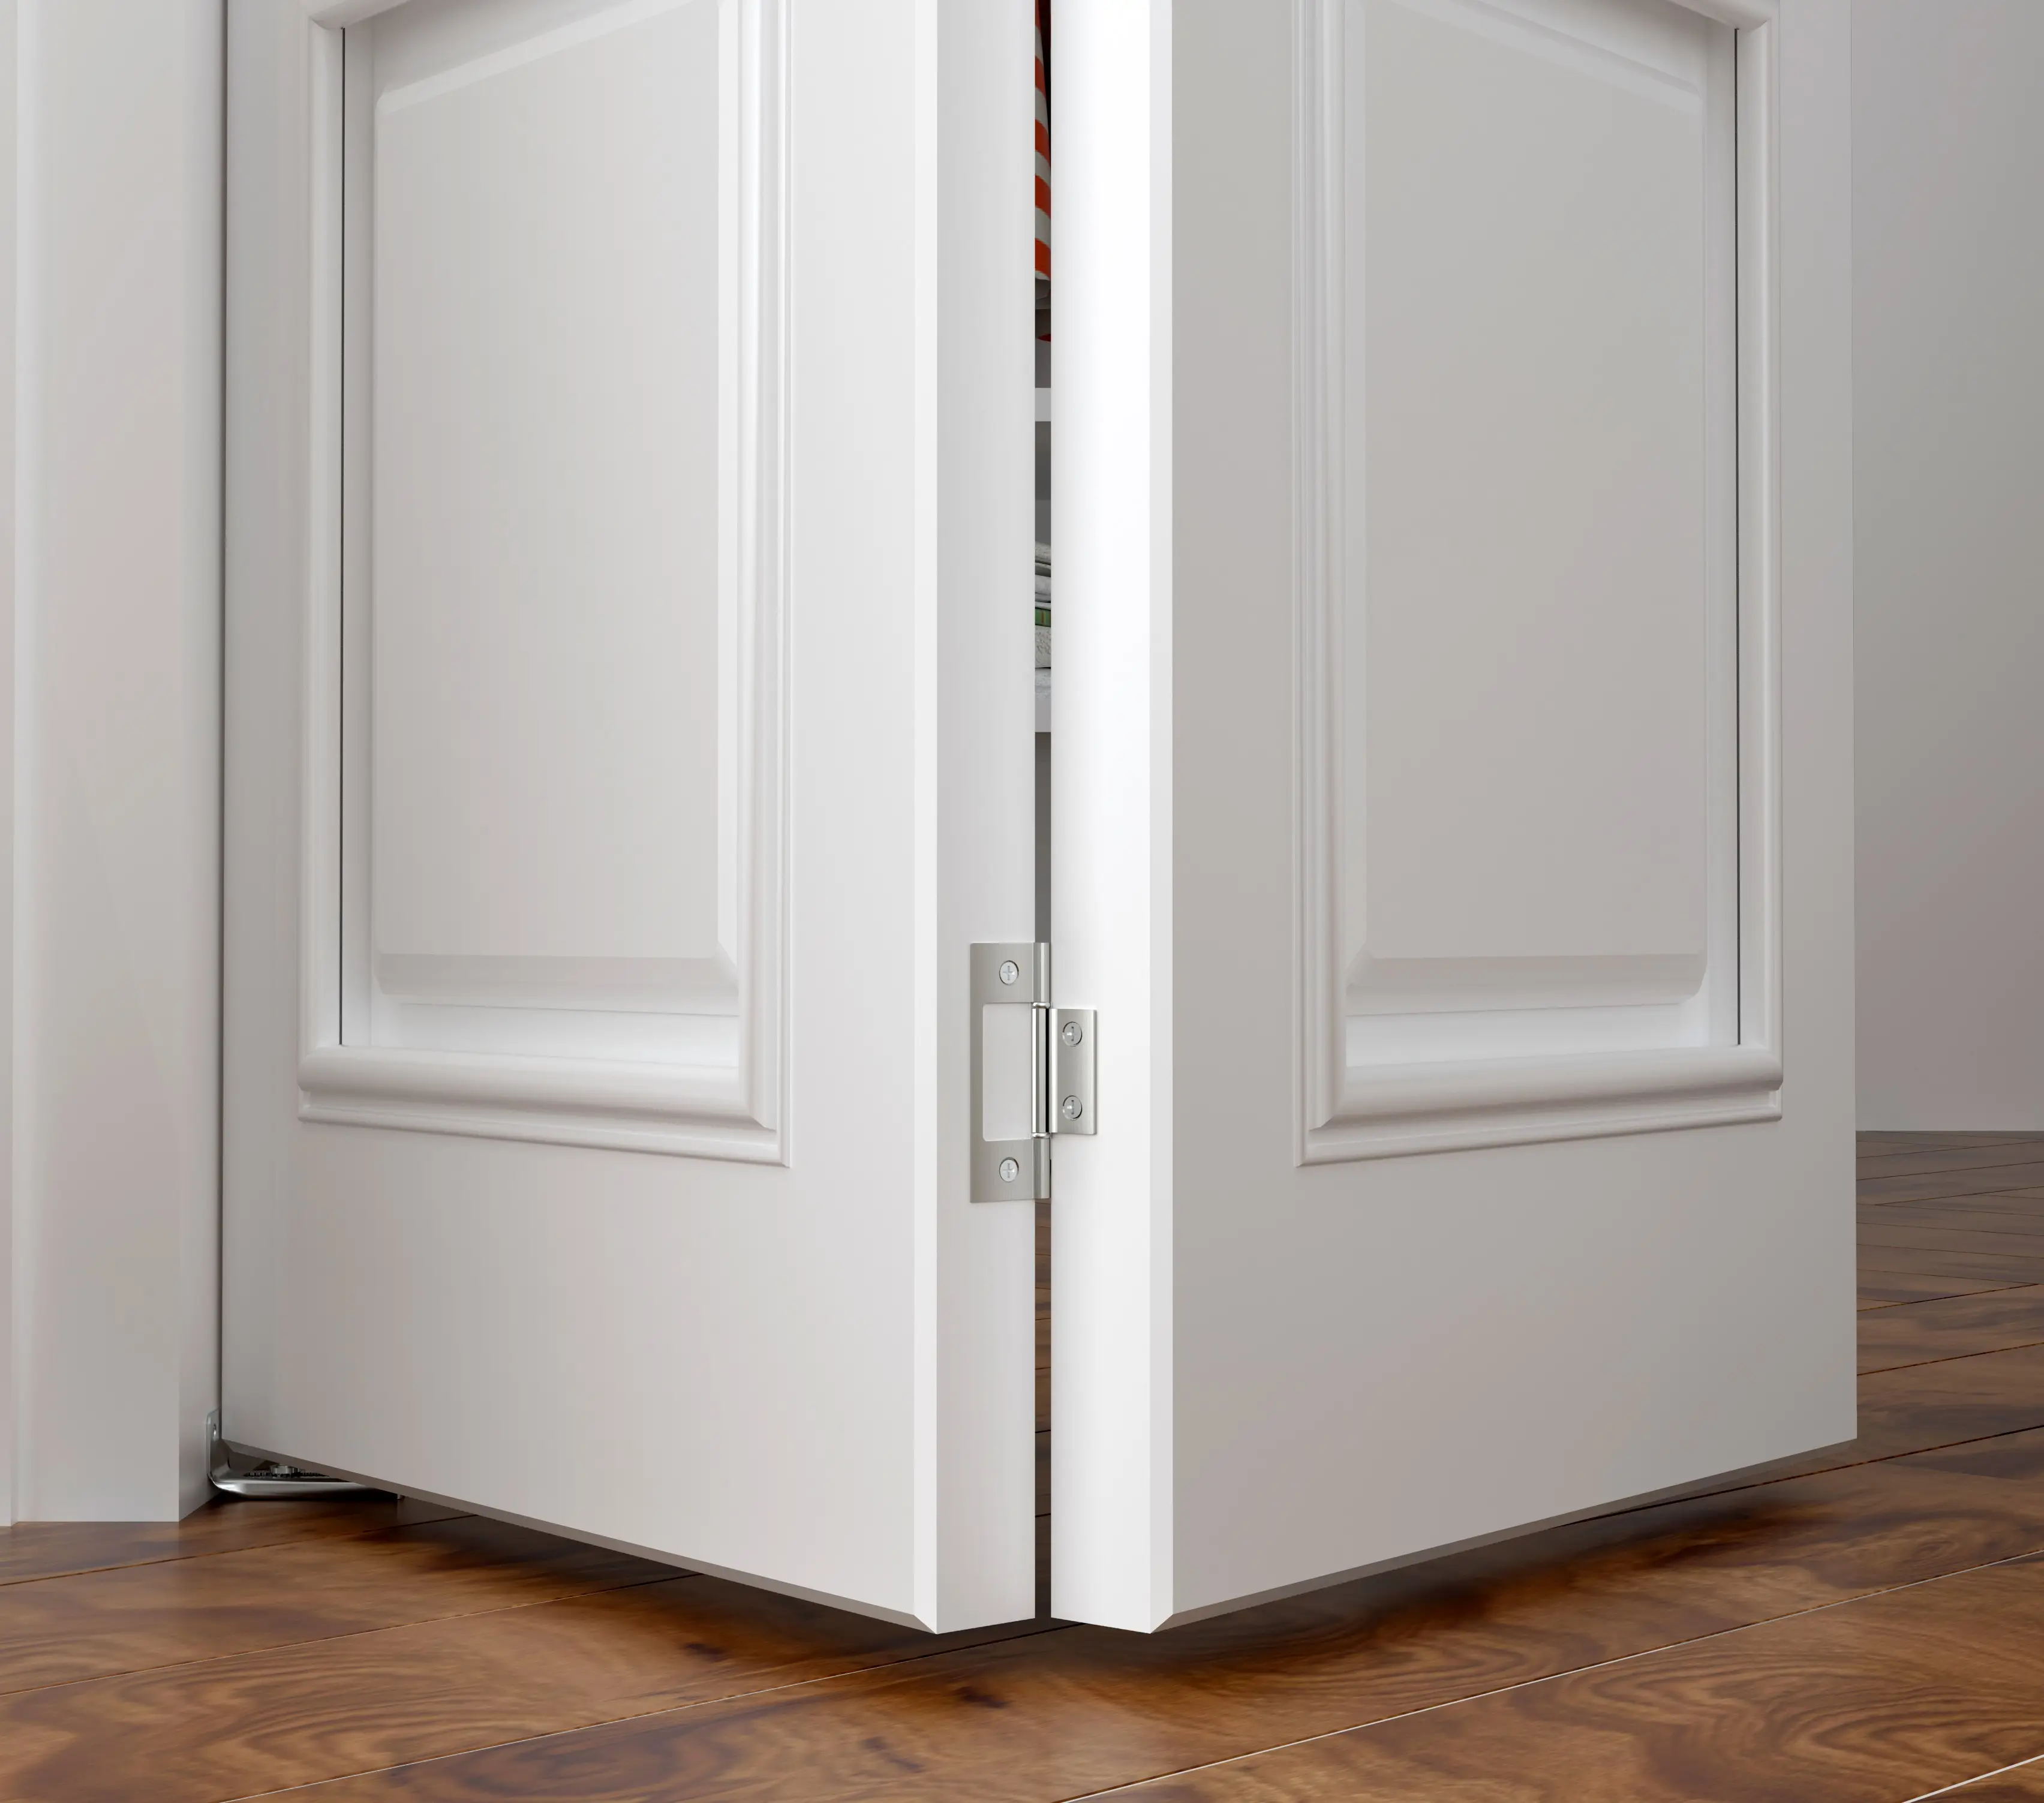 LPP стальная гусеница, Двухстворчатая раздвижная дверь, оборудование для шкафа или шкафа